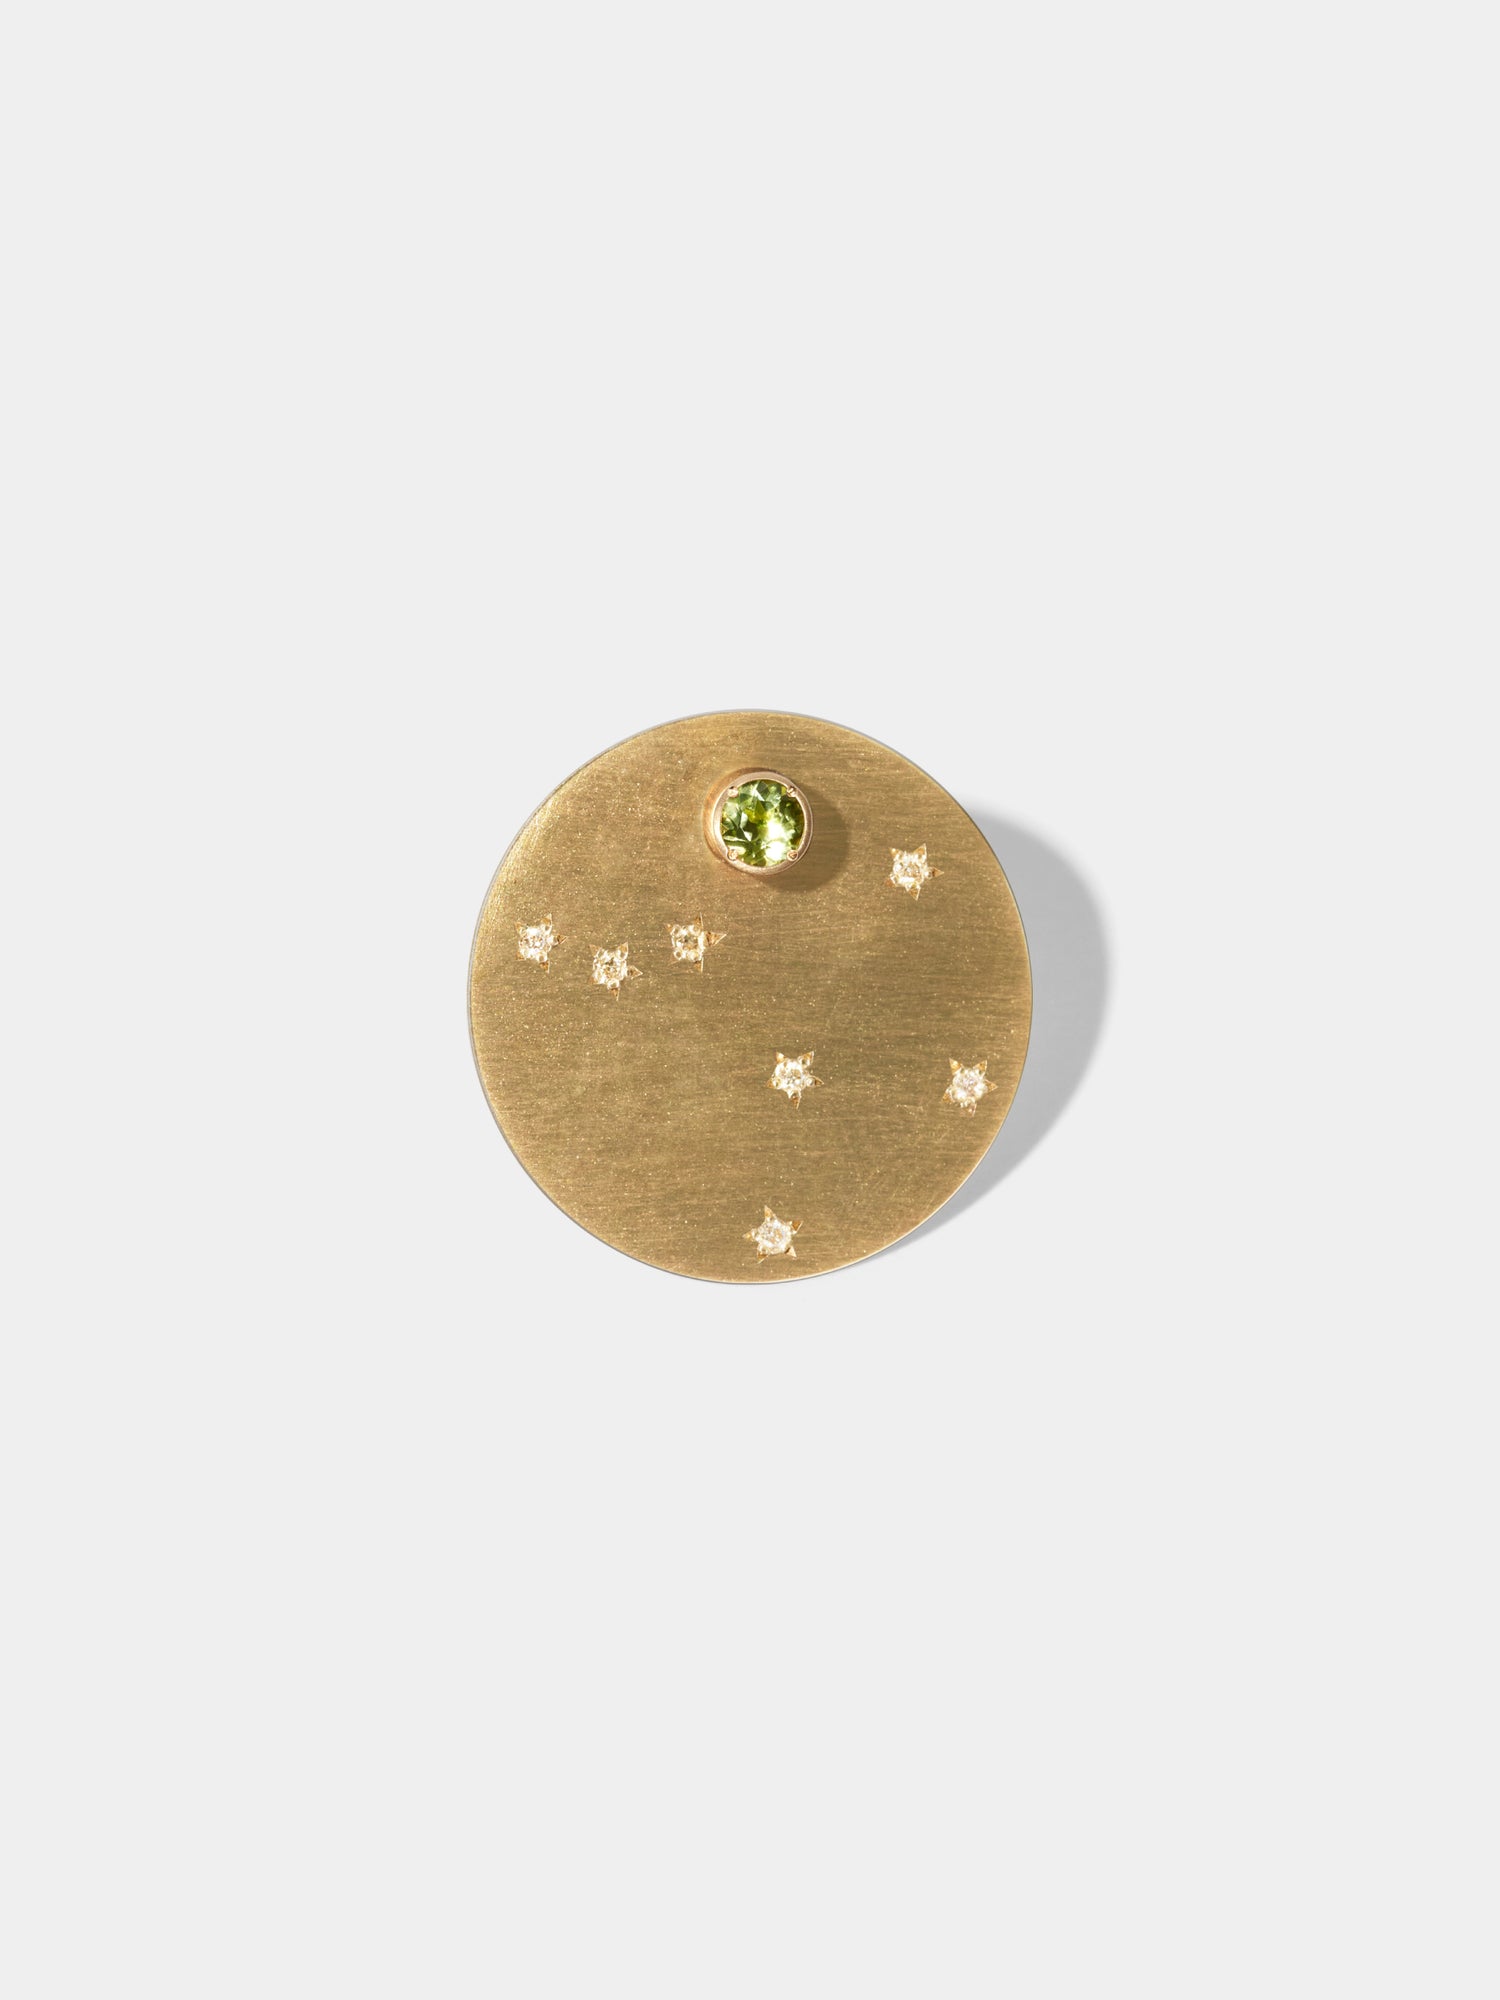 ASTERISM_Pierced Earring_Libra(天秤座) / Peridot